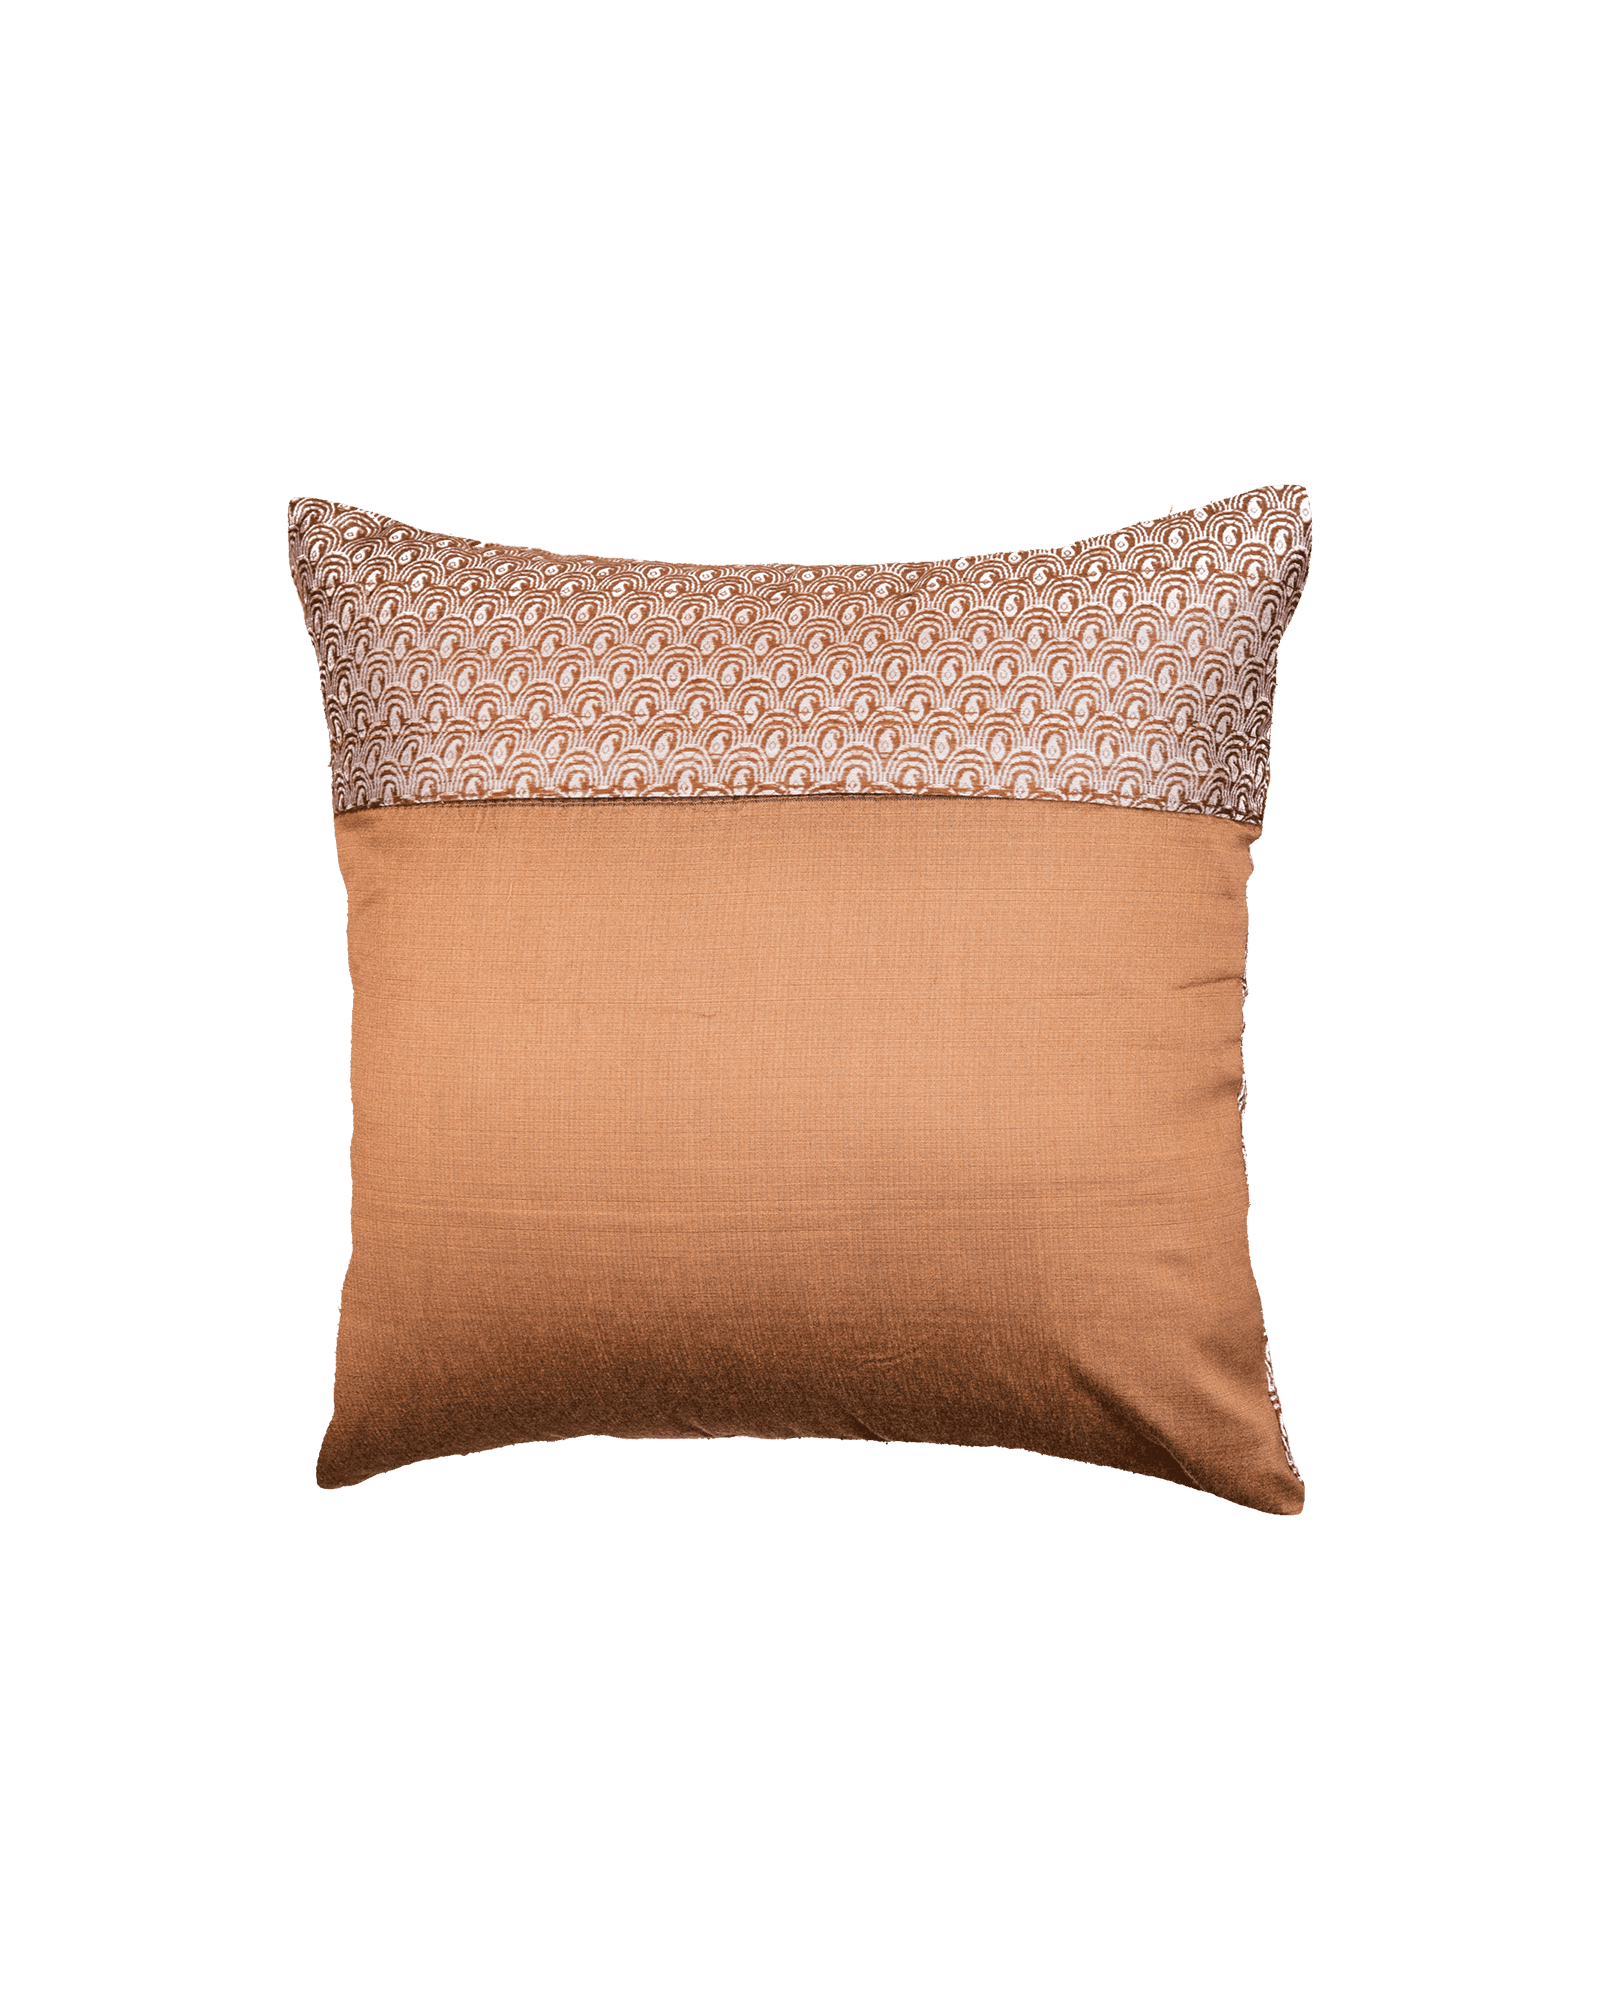 Beaver Brown Banarasi Jacquard Noile Silk Cushion Cover 16" - By HolyWeaves, Benares